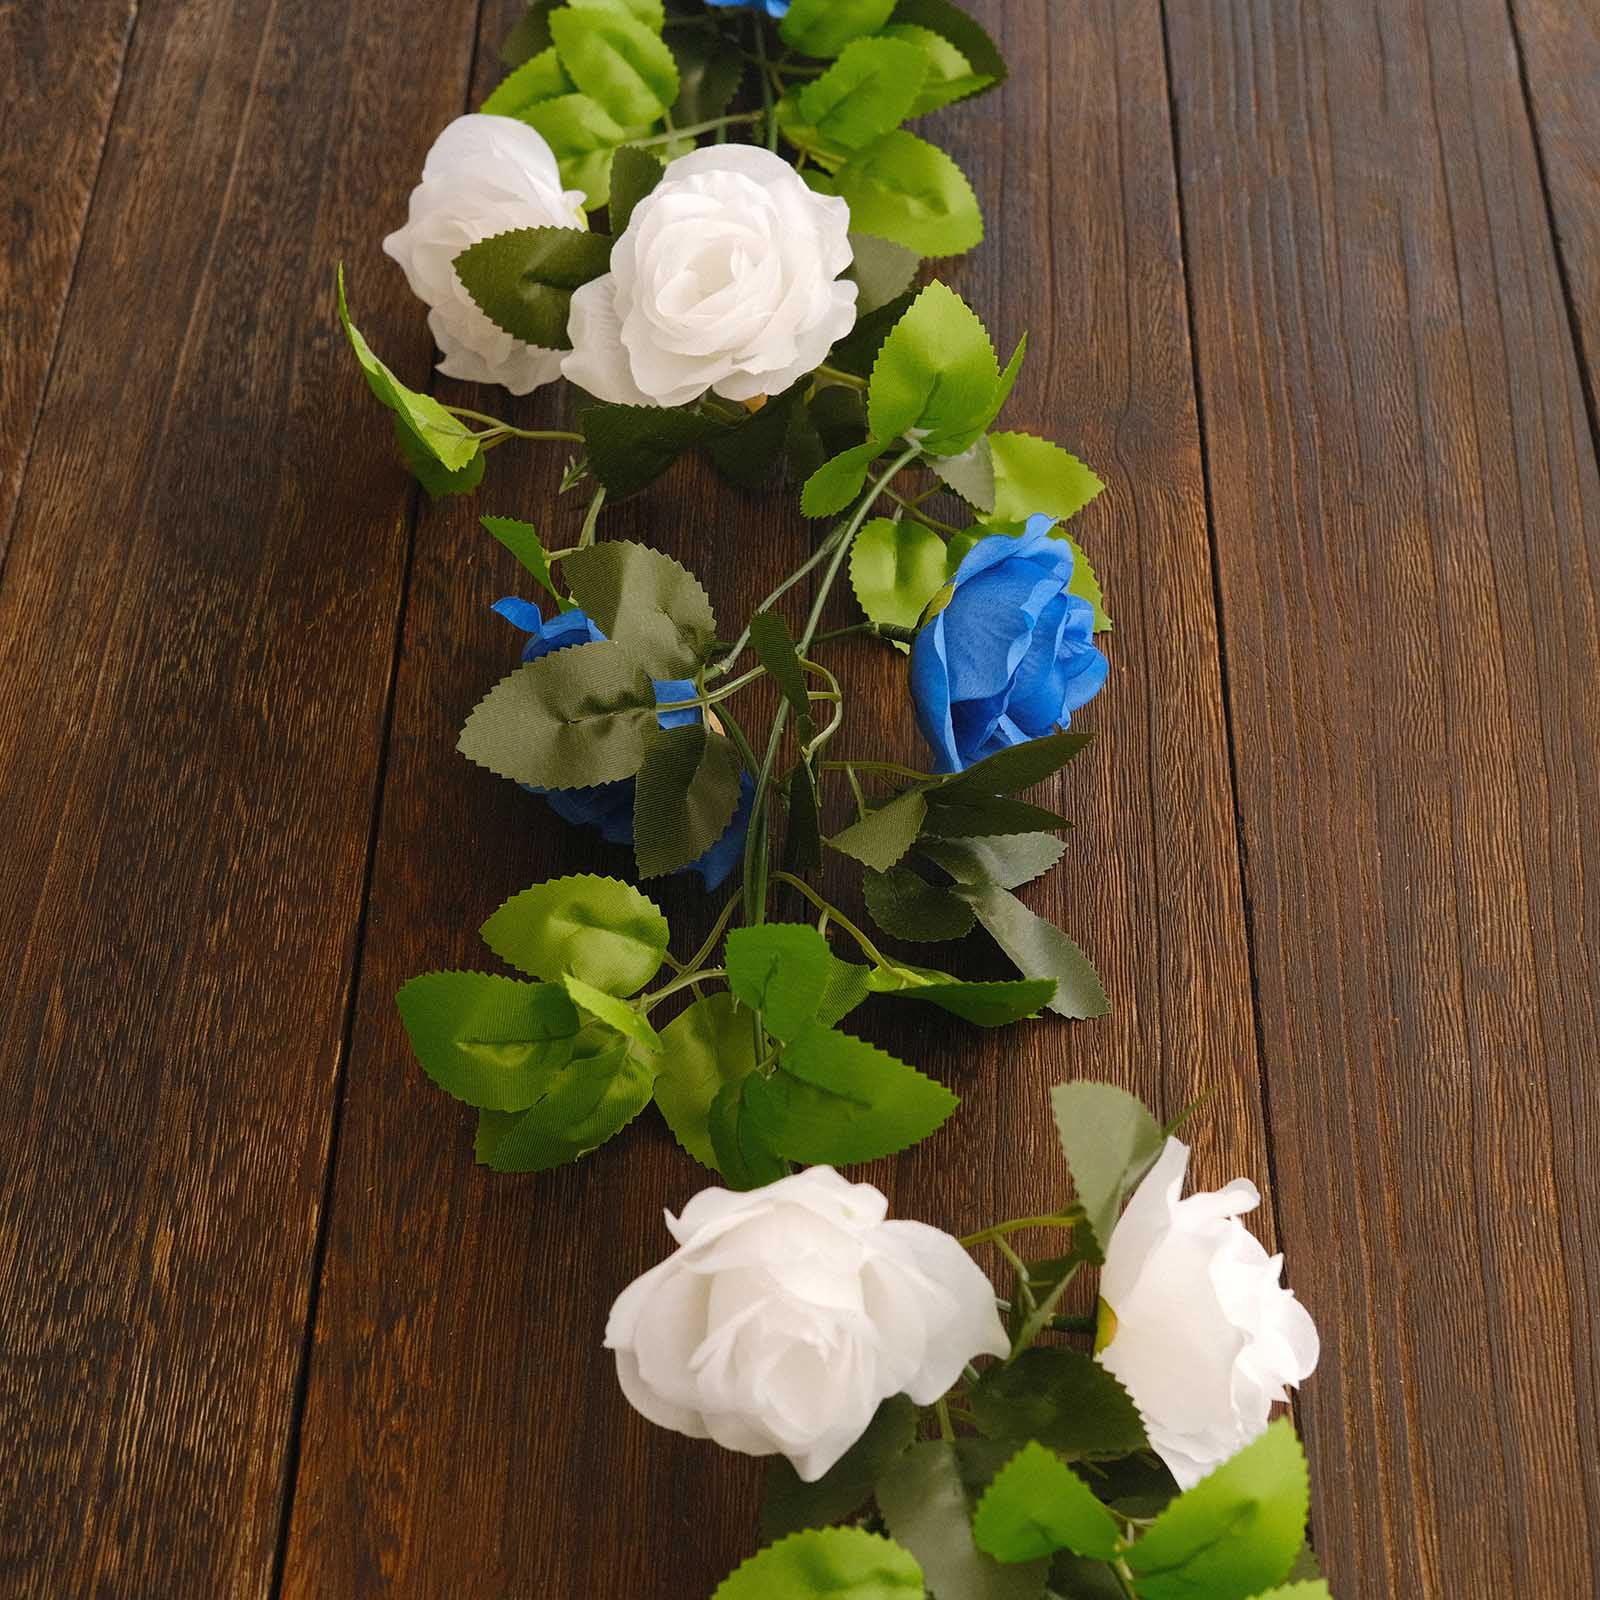 2 Artificial 7 feet Silk Roses Artificial Flowers Vine Garlands